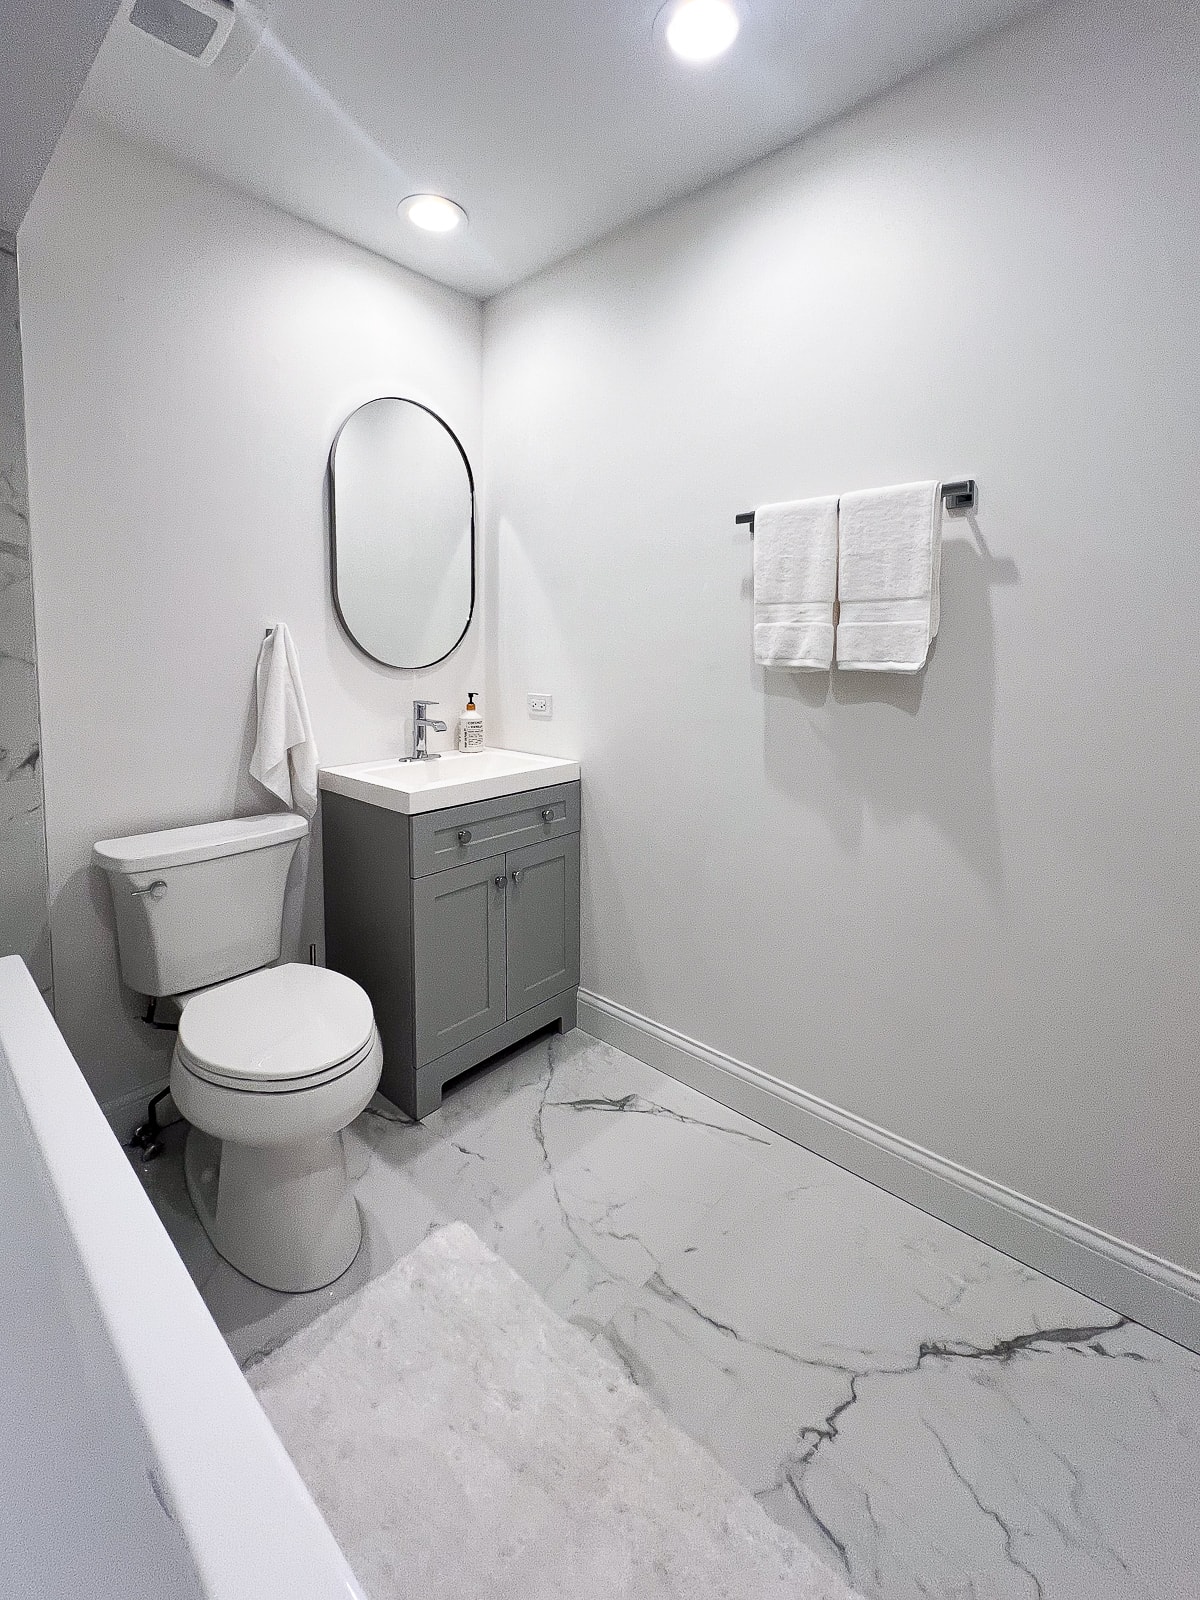 Une salle de bain entièrement blanche avec de la peinture blanche, des sols en marbre et une vanité grise